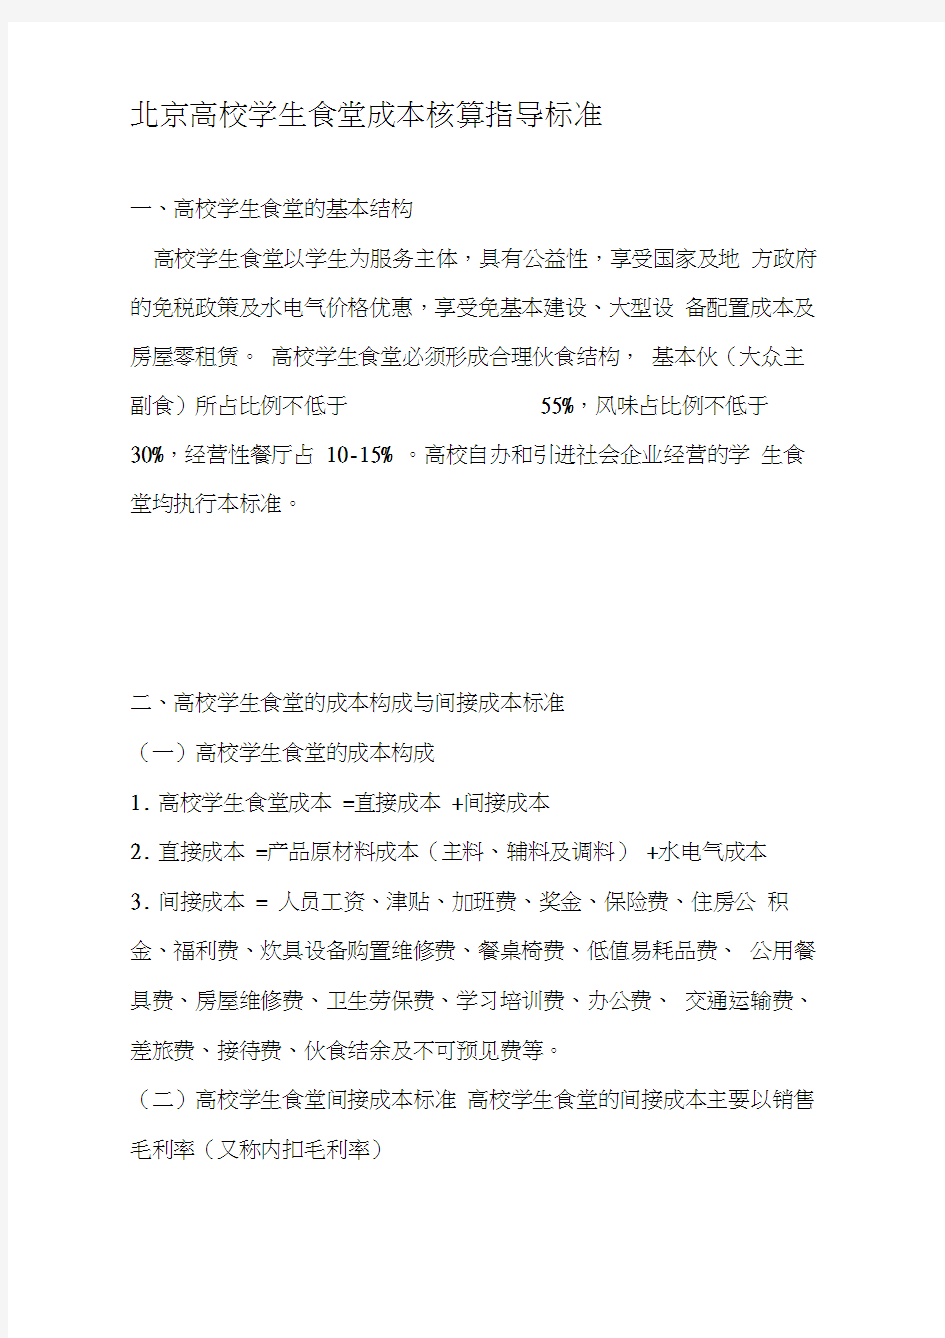 北京高校食堂成本核算指导标准